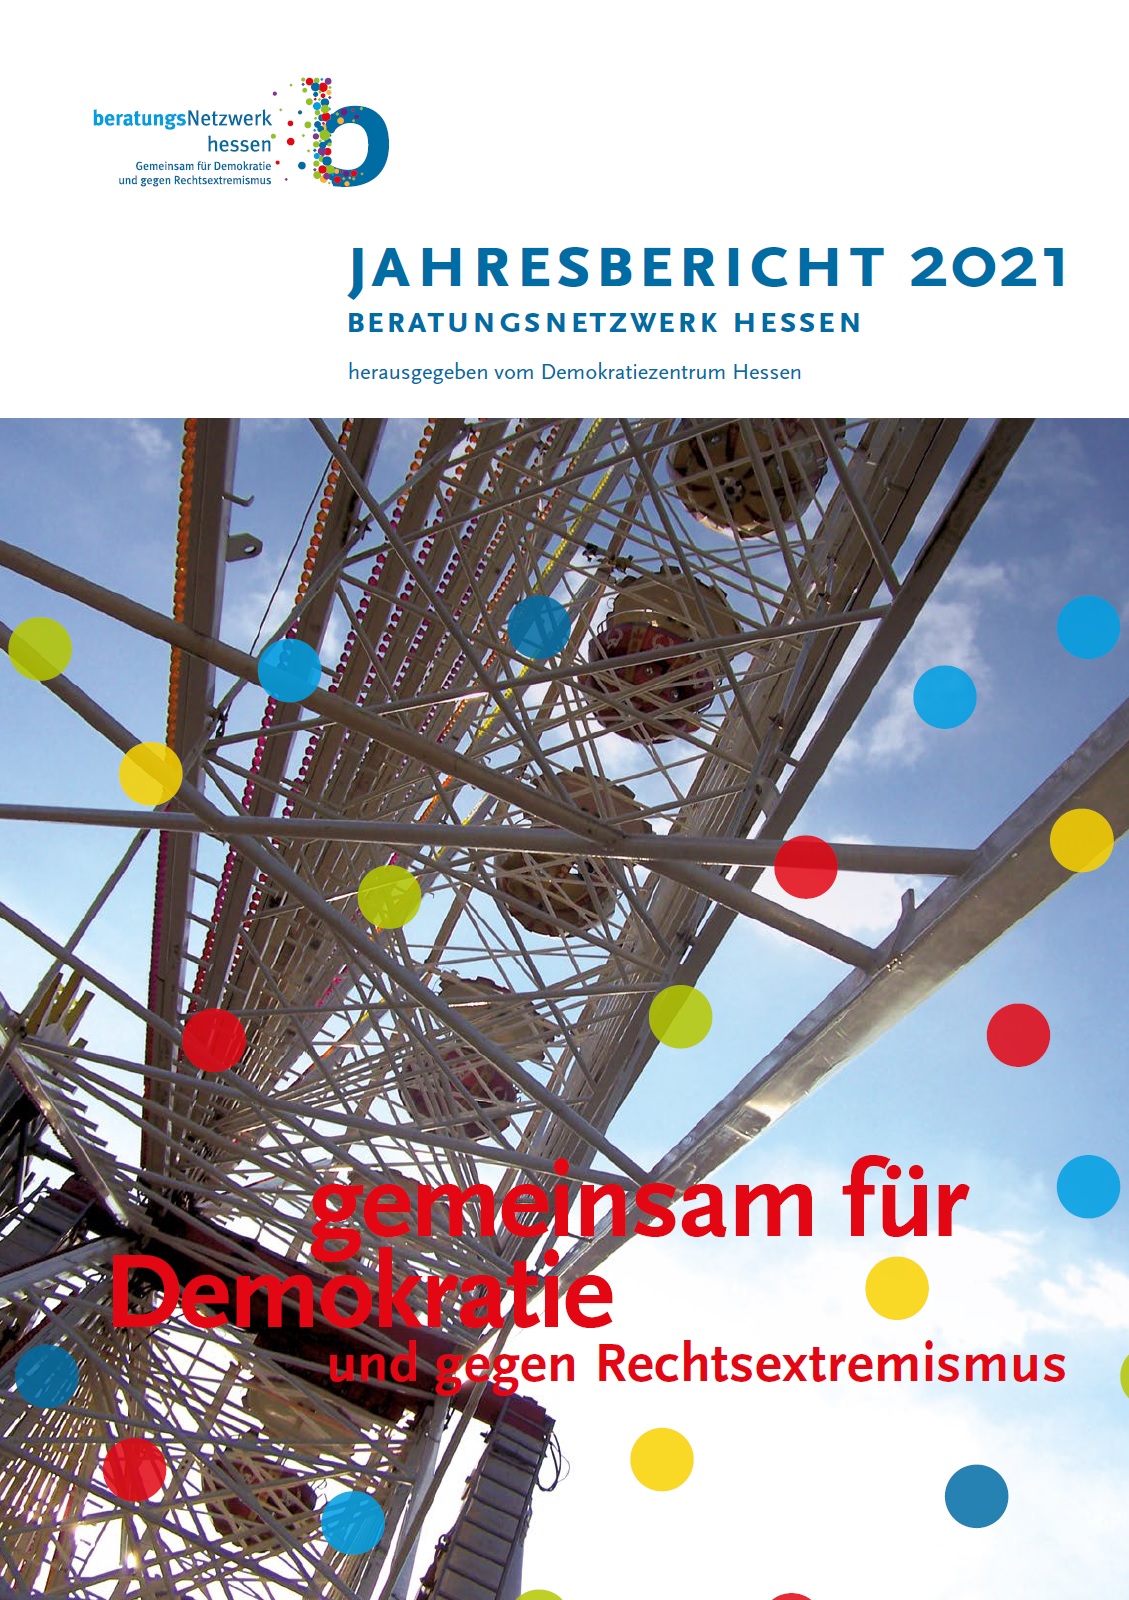 Auf dem Bild steht Bericht 2021 Beratungsnetzwerk Hessen - gemeinsam für demokratie und gegen Rechtsextremismus. Im Hintergrund ist mutmaßlich ein Teil einer Achterbahn oder etwas ähnliches abgebildet